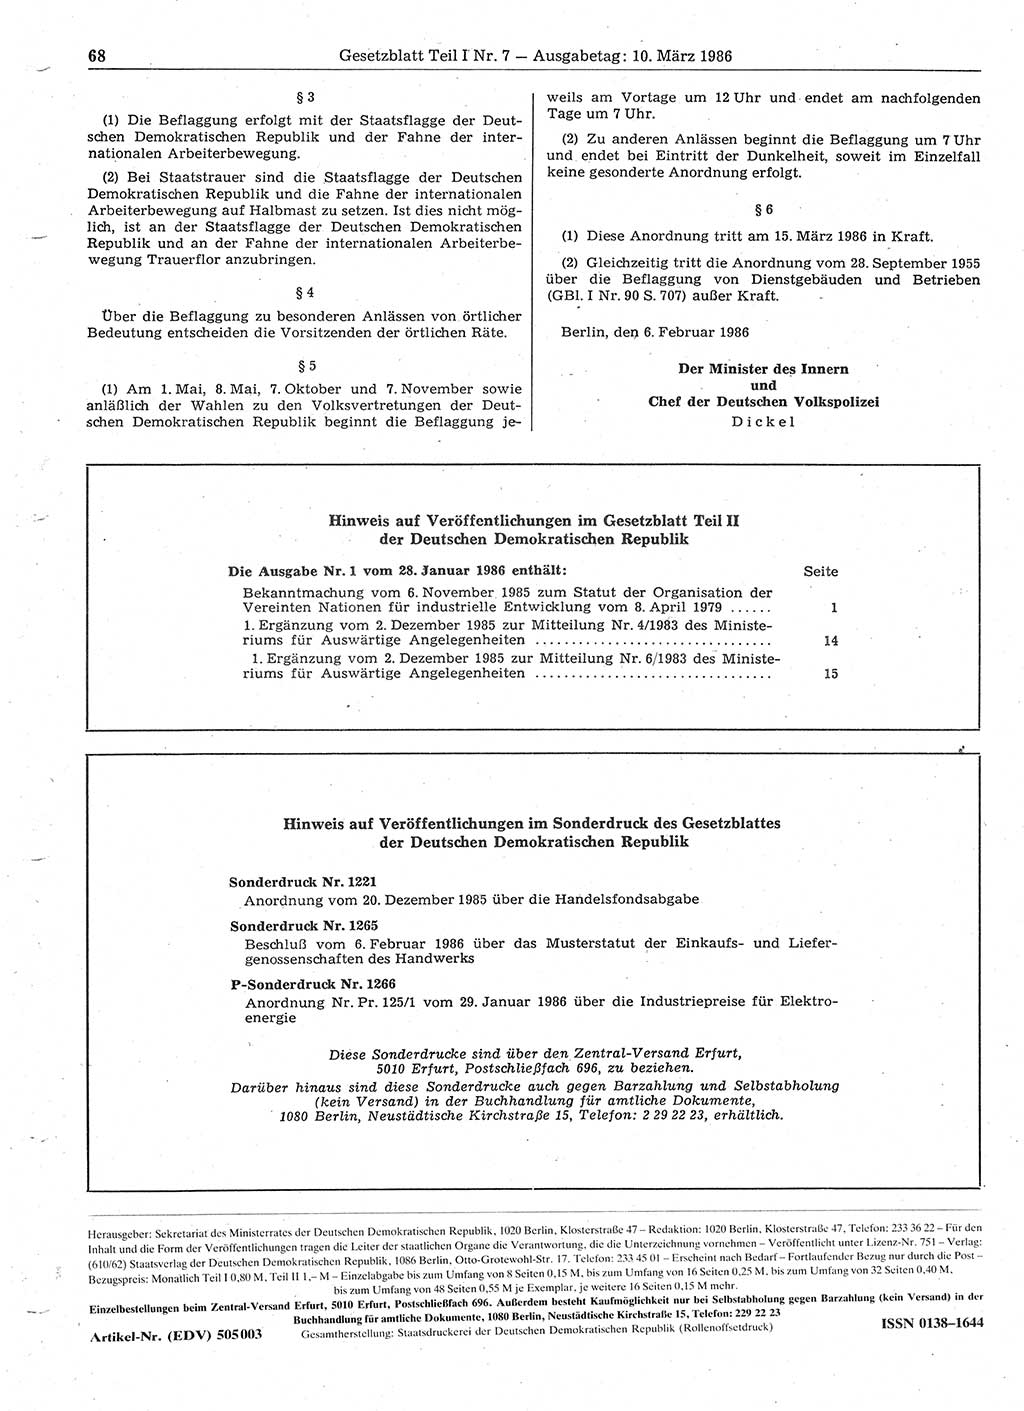 Gesetzblatt (GBl.) der Deutschen Demokratischen Republik (DDR) Teil Ⅰ 1986, Seite 68 (GBl. DDR Ⅰ 1986, S. 68)